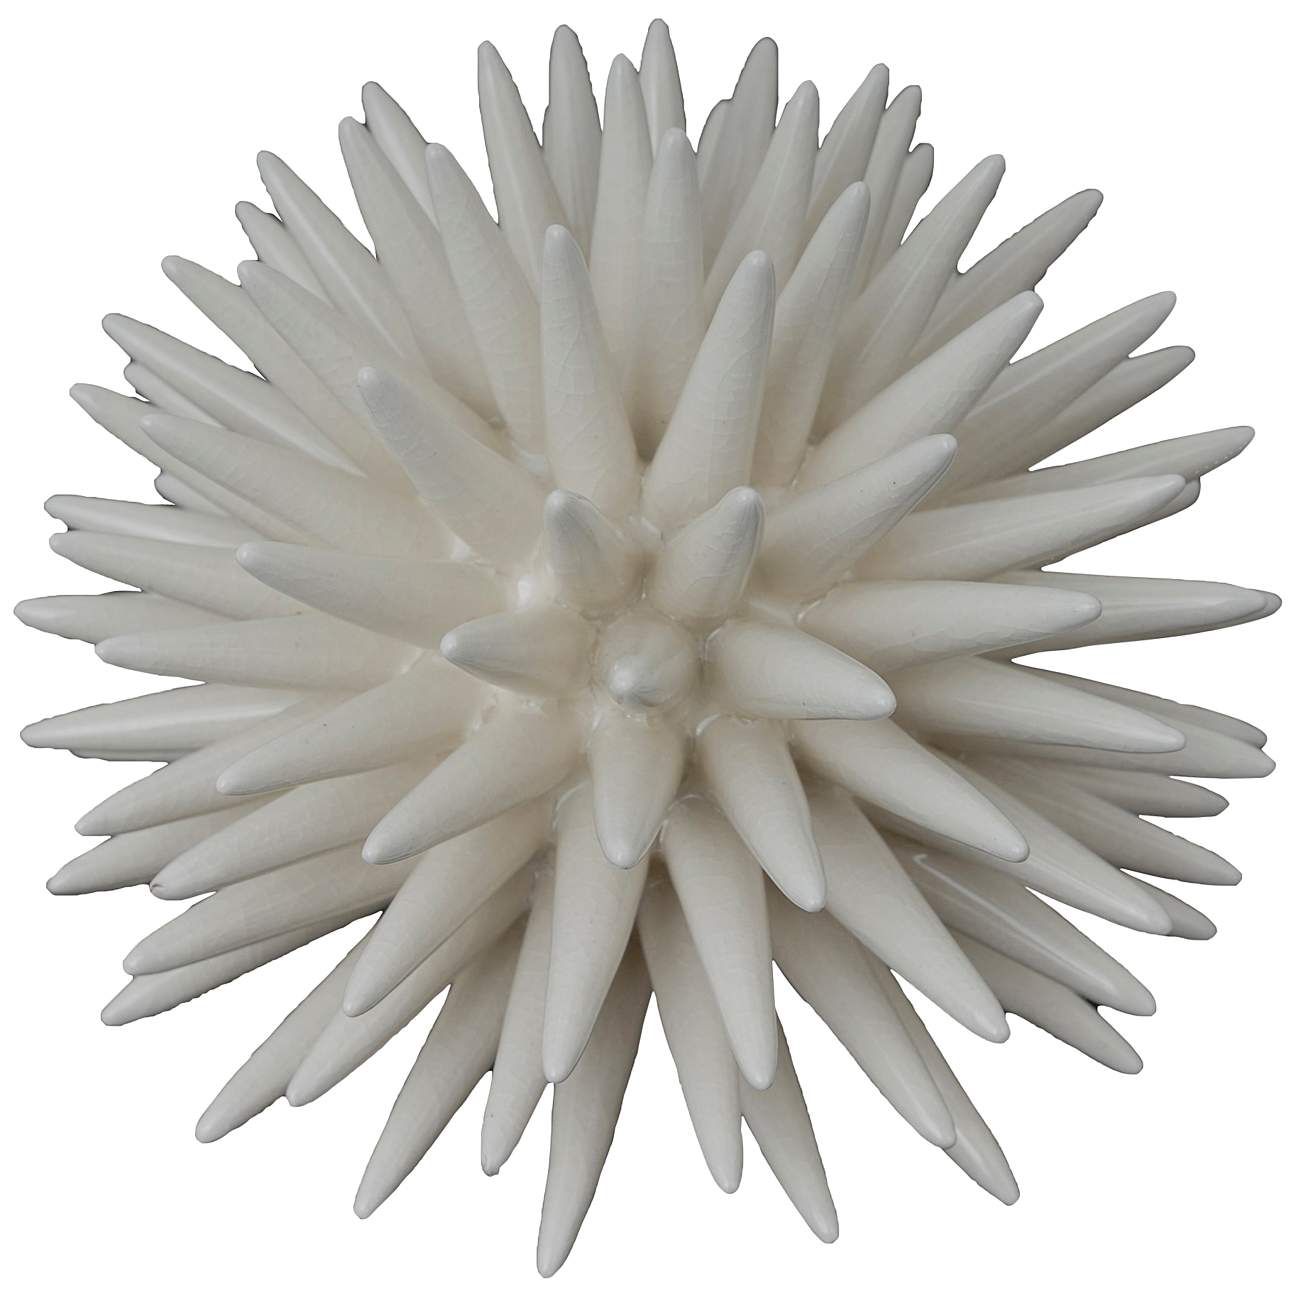 Vibrant White 6" Wide Coral Sculpture | Lamps Plus